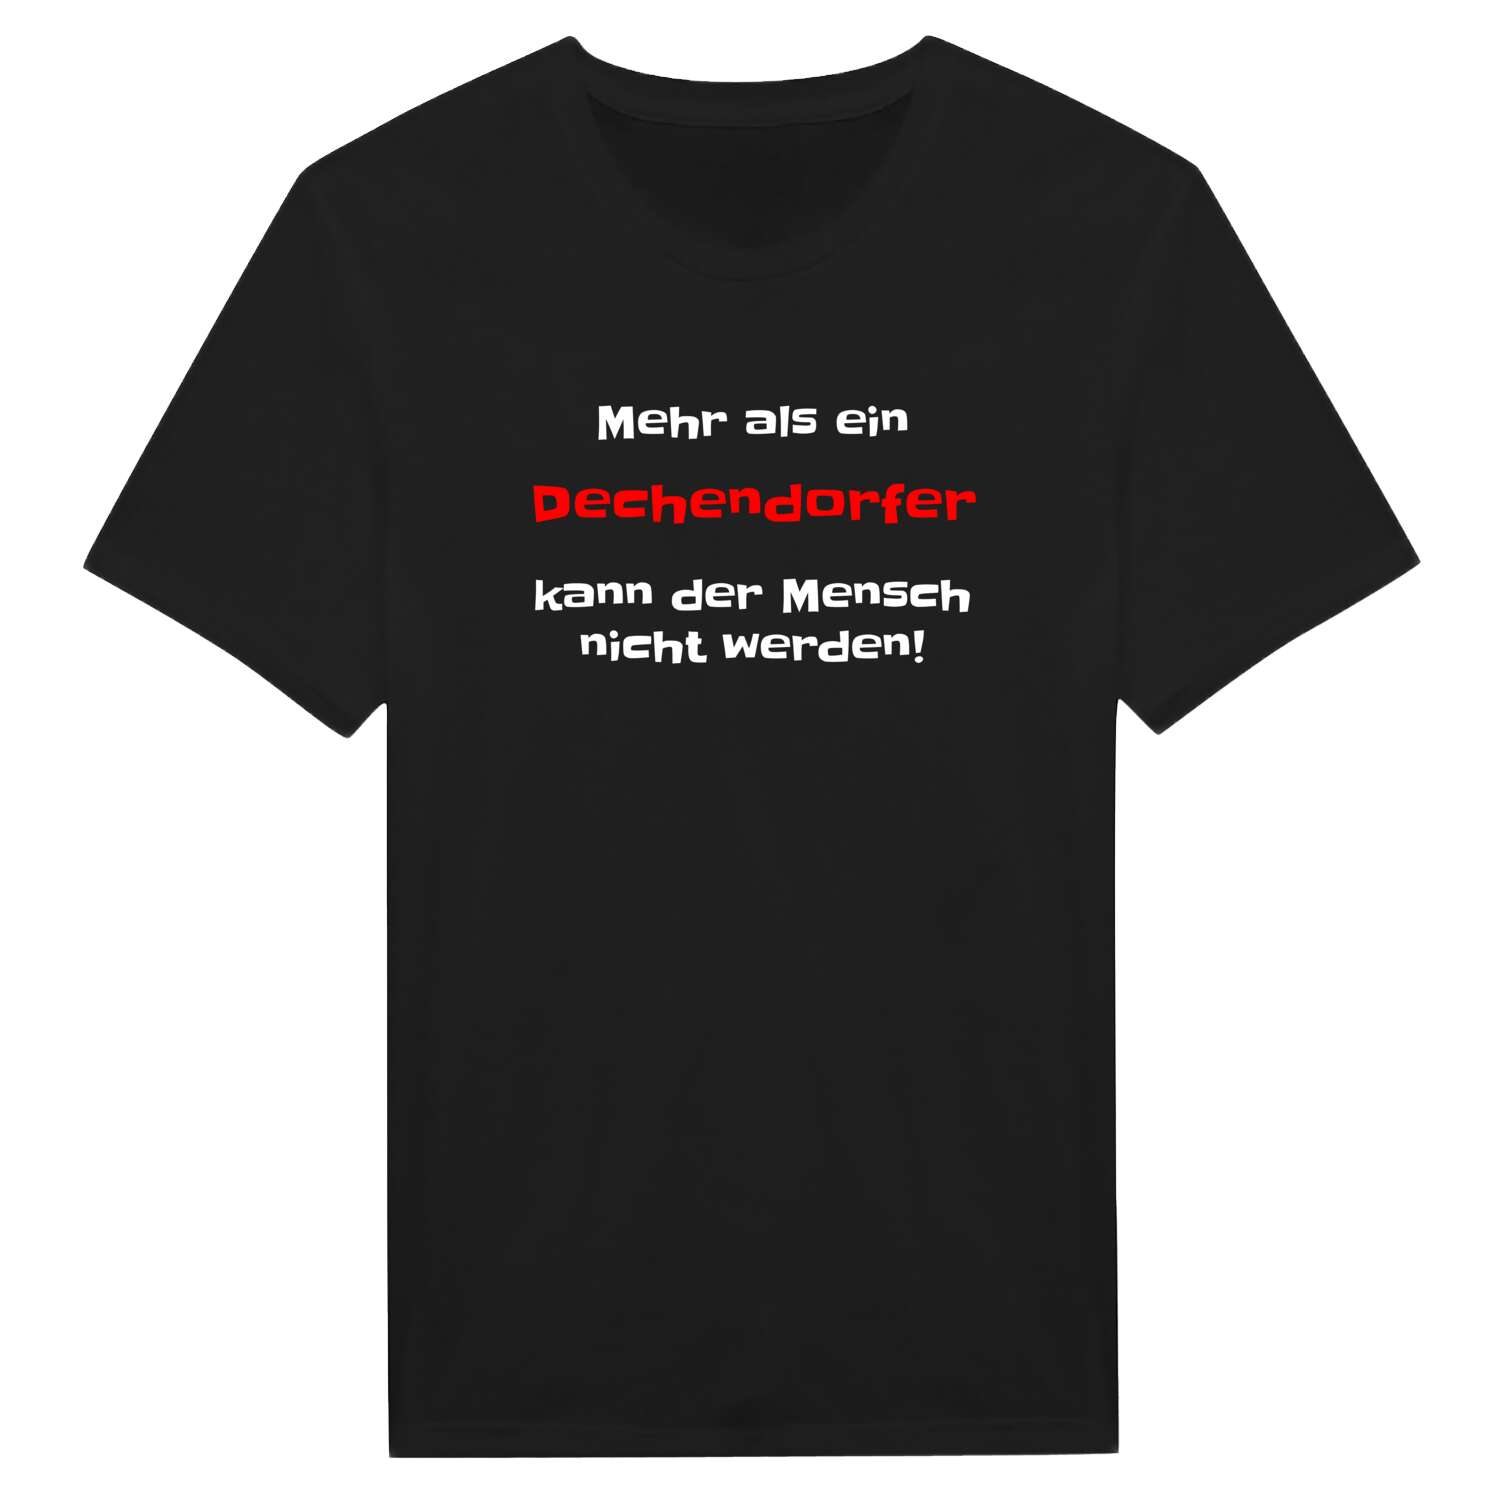 Dechendorf T-Shirt »Mehr als ein«